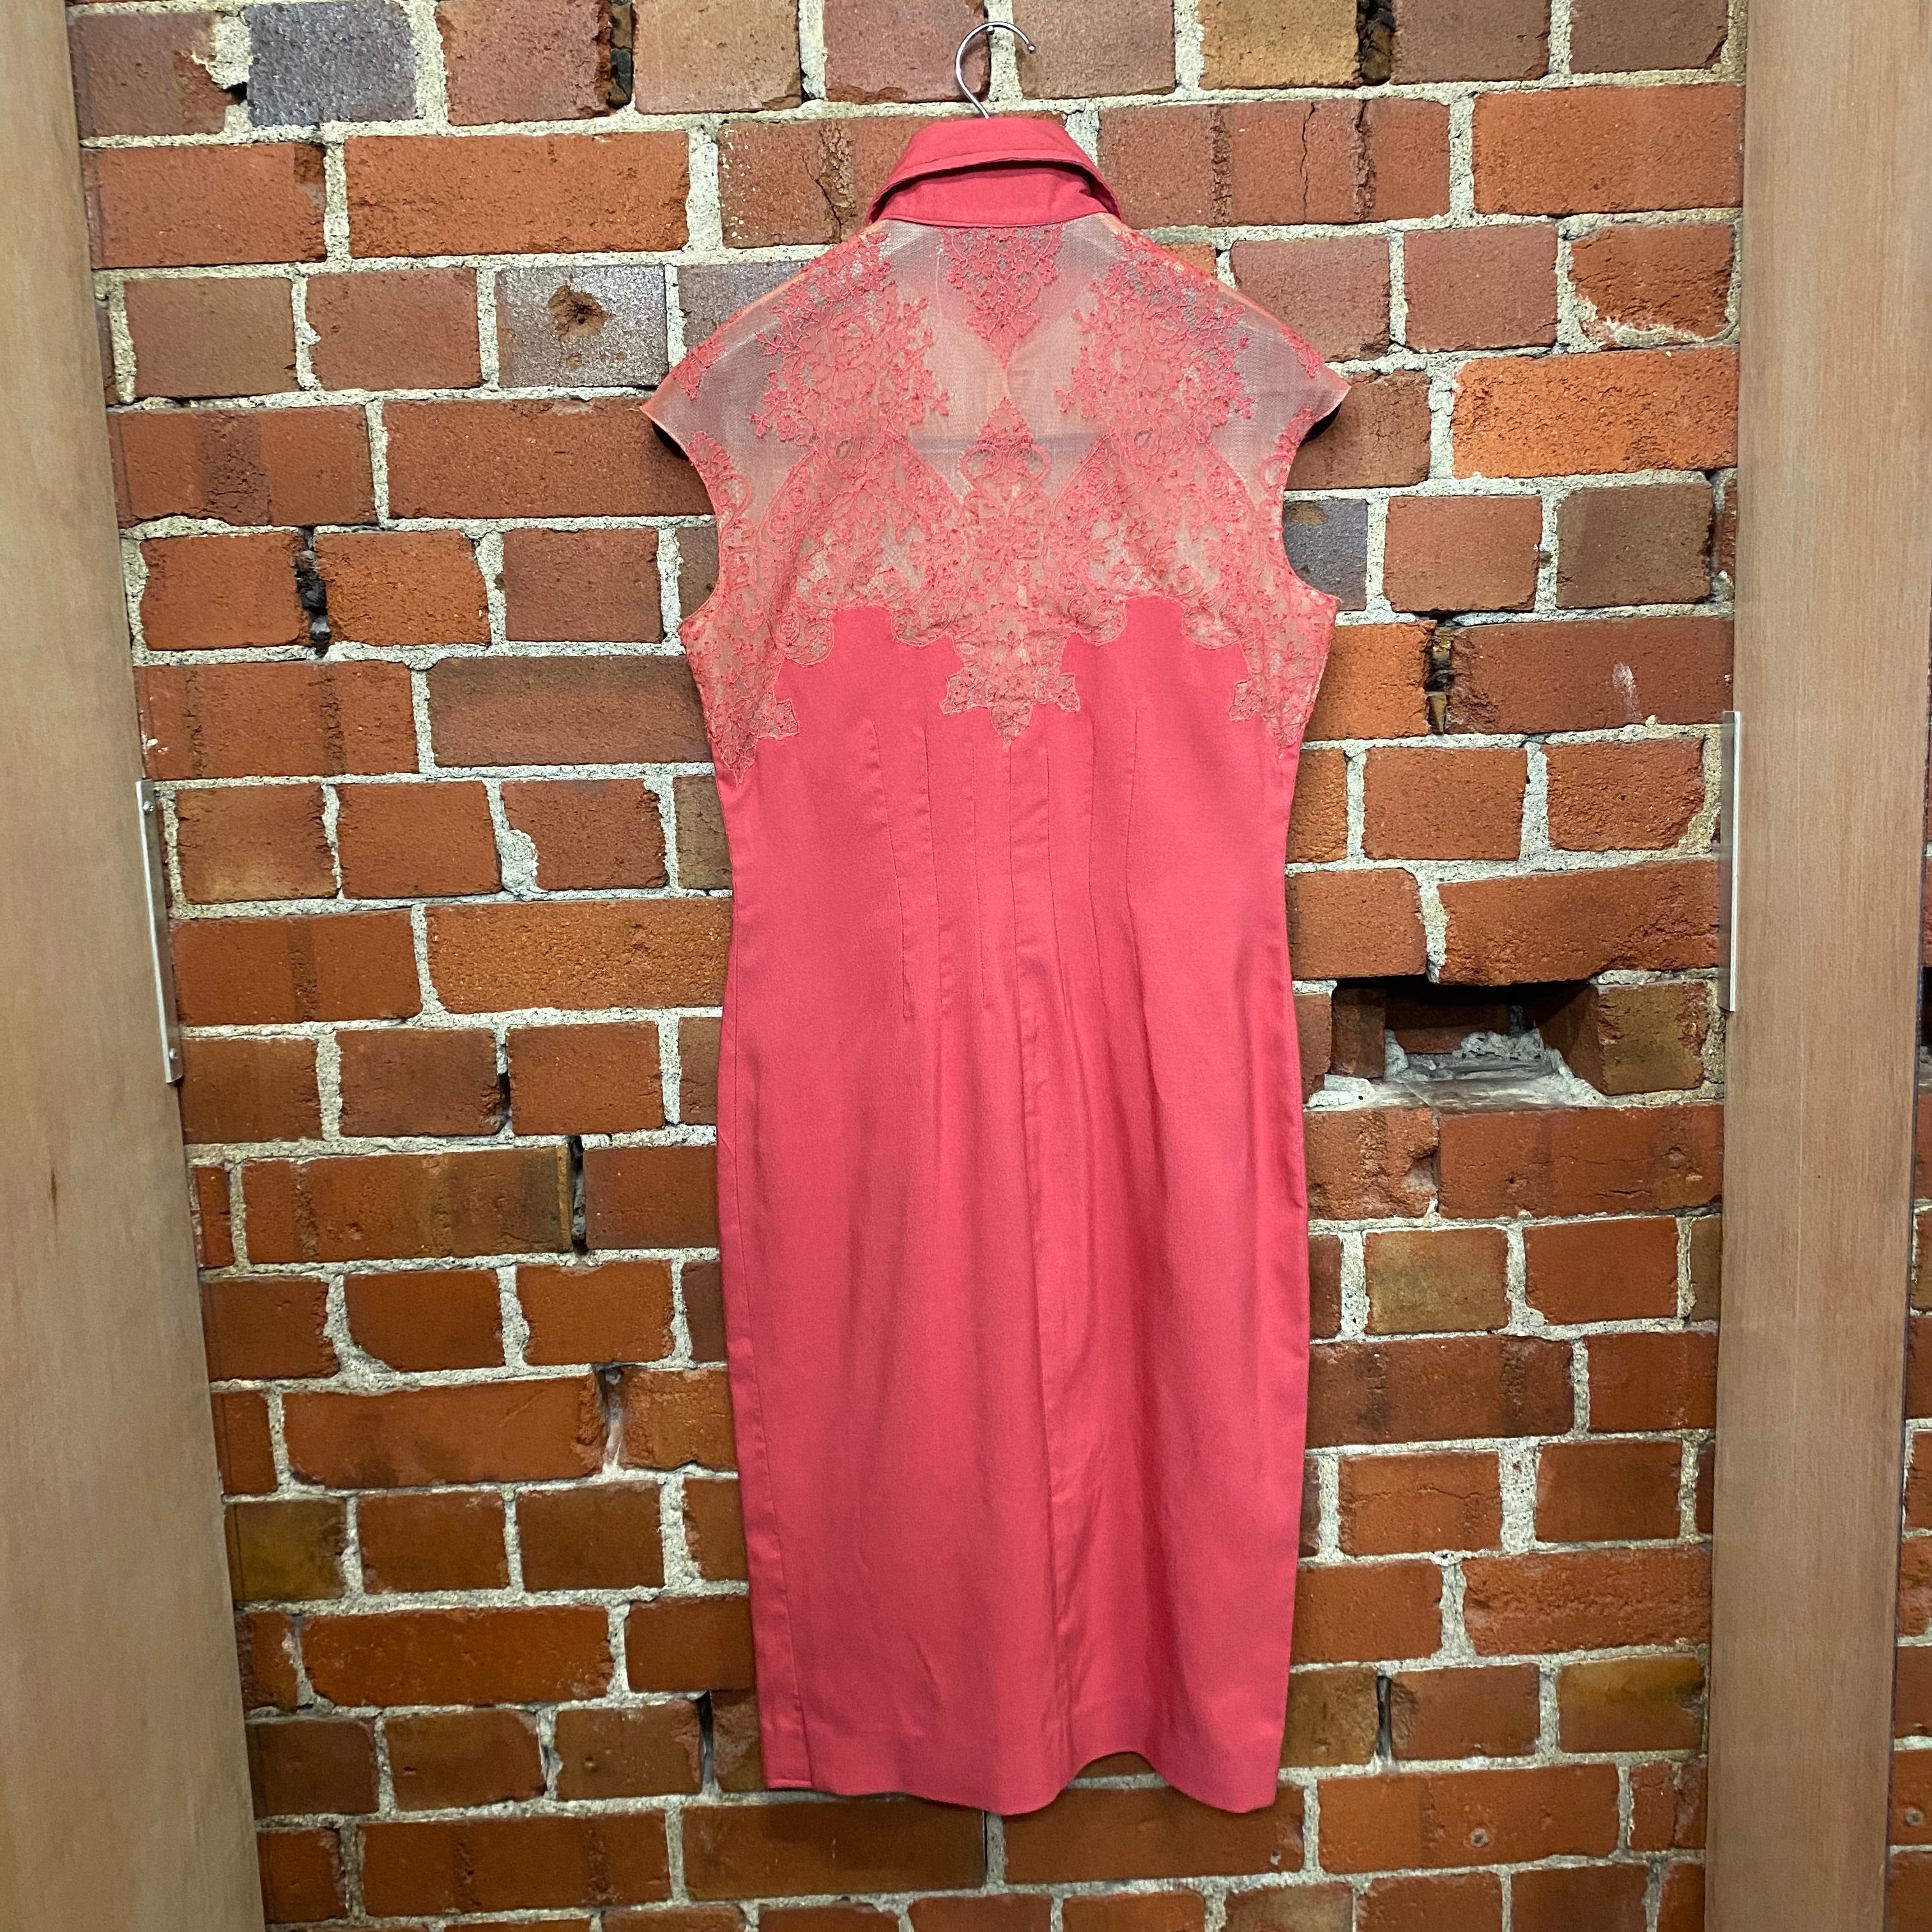 CHLOE sexy pink lace dress